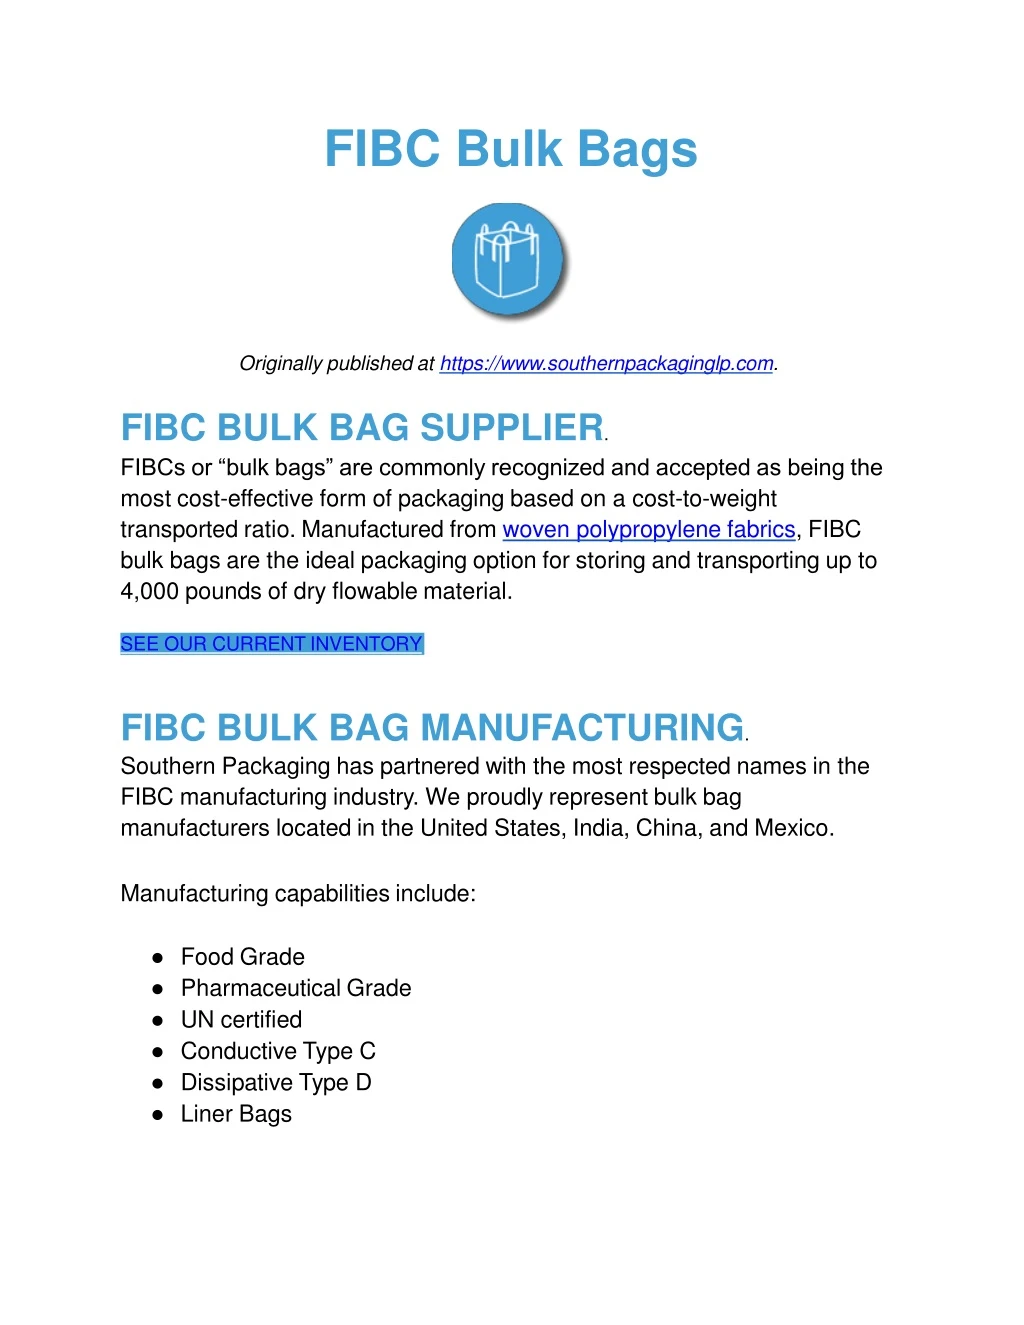 fibc bulk bags